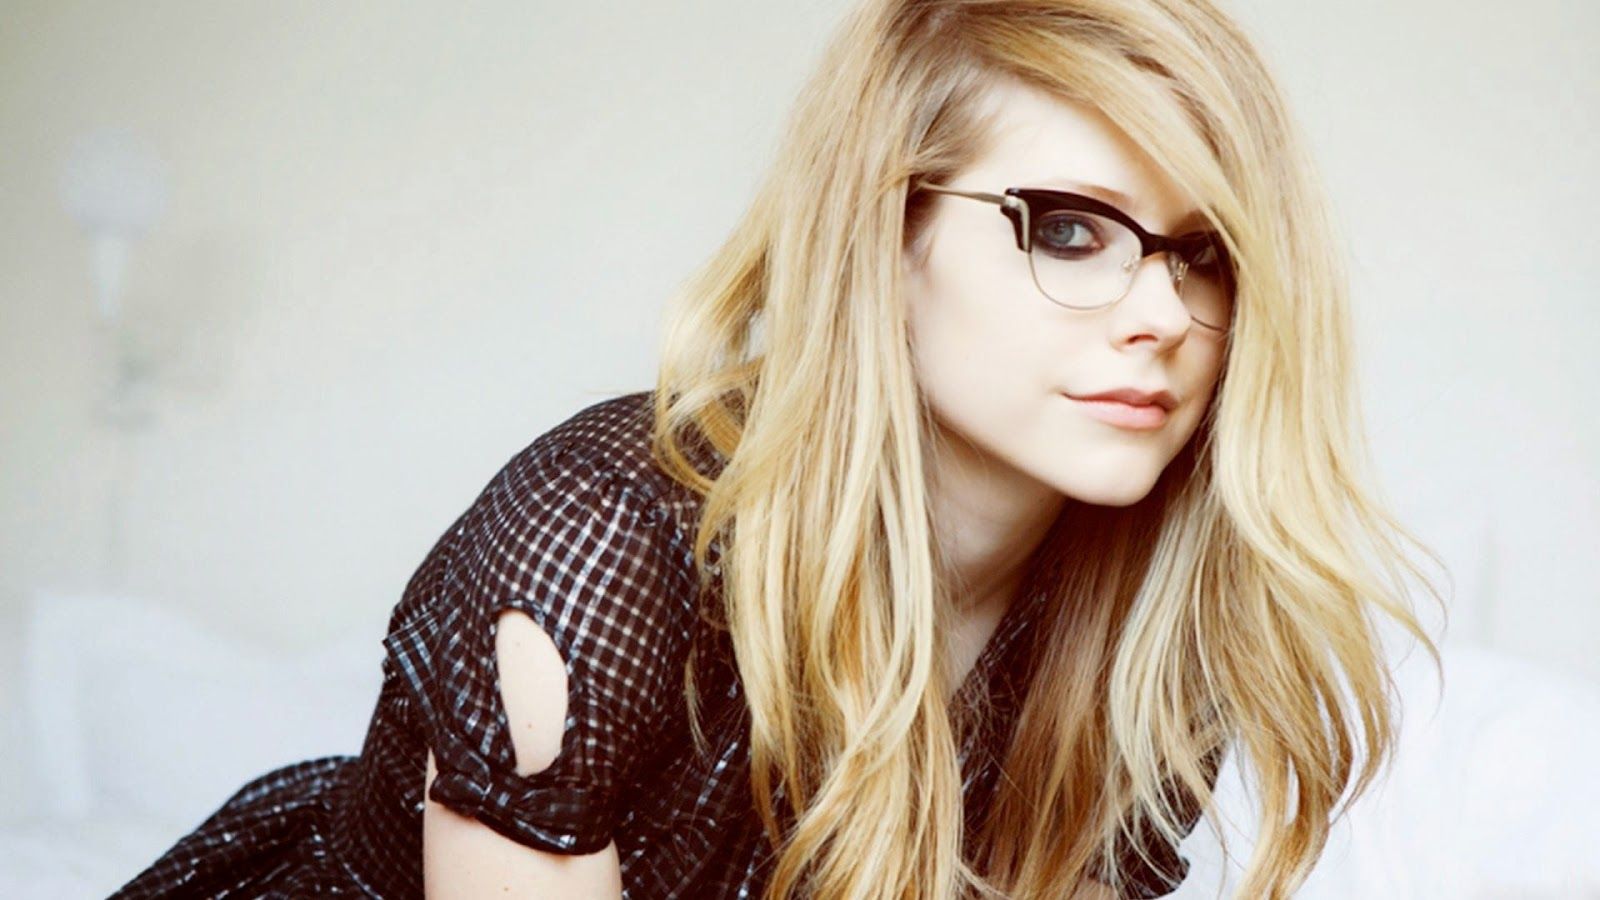 Avril Lavigne Wallpaper HD